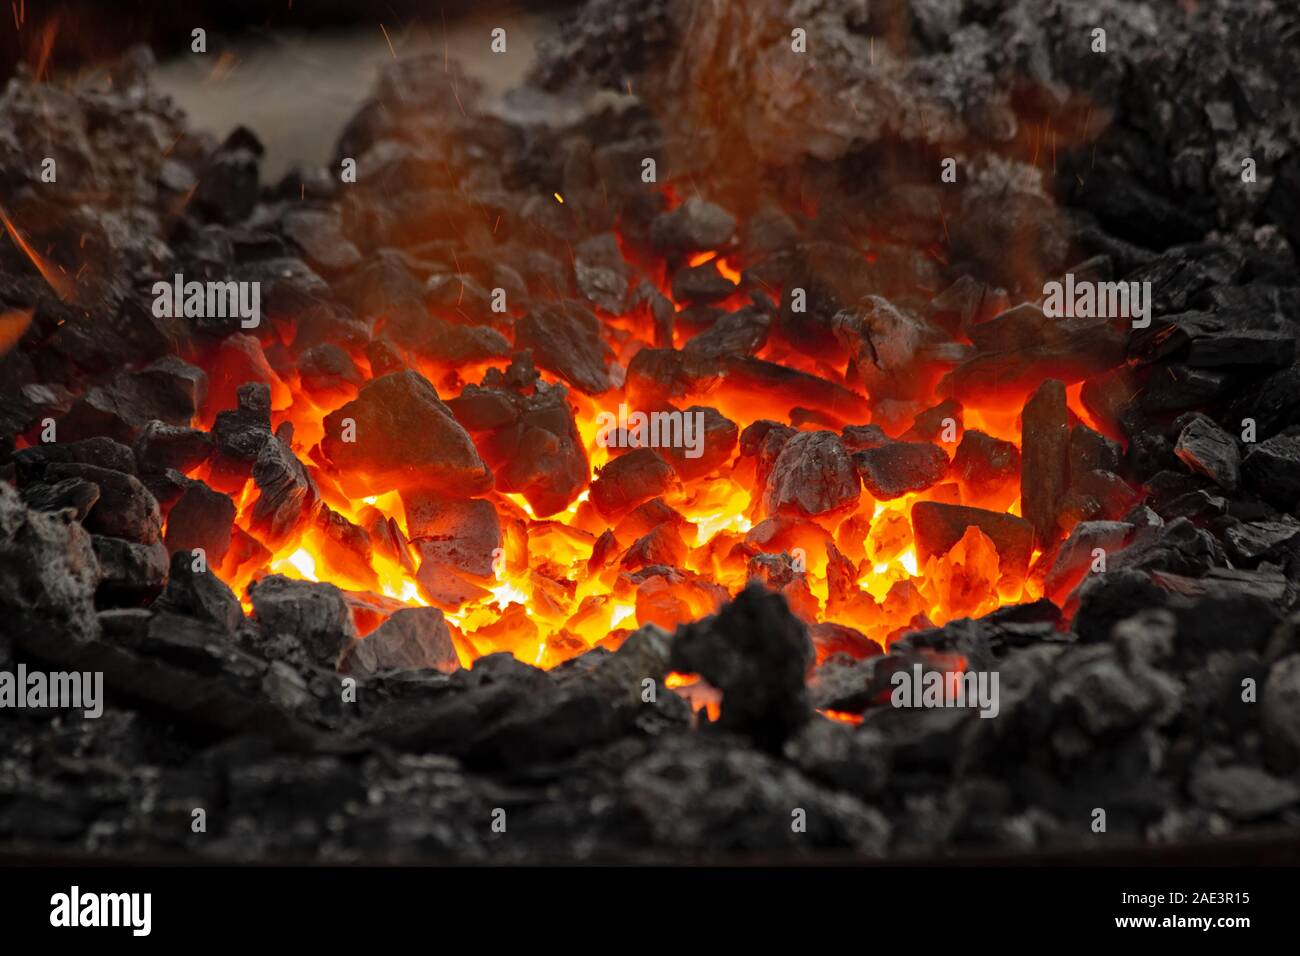 Flammen und Glut Leuchten in einem Lagerfeuer. Feuer, Hitze, Kohle und Asche mit Funkenflug. Stockfoto